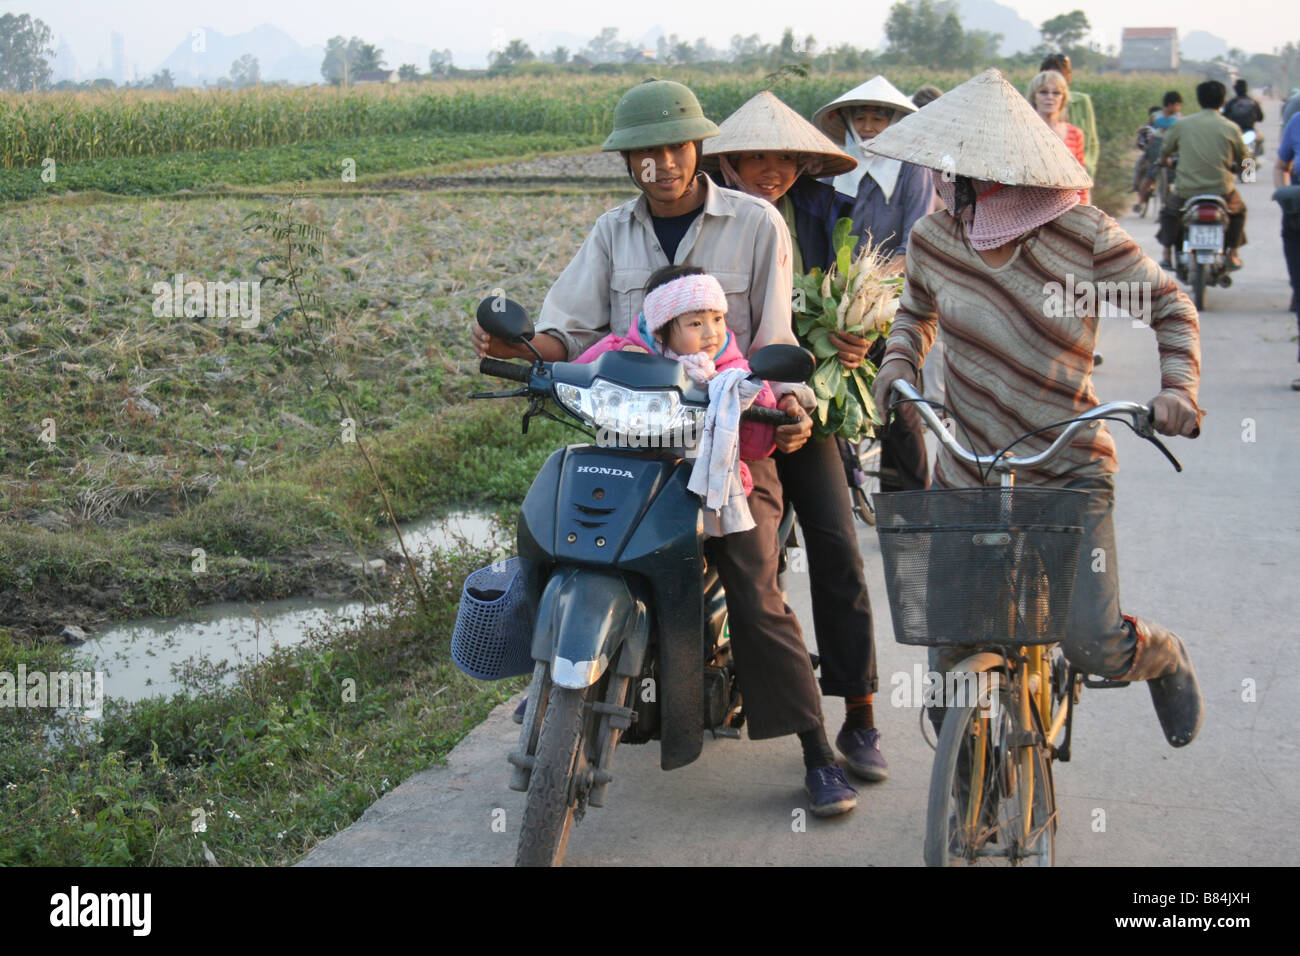 Ritratto di una giovane famiglia vietnamita su una moto nei pressi di un campo in Vietnam Foto Stock